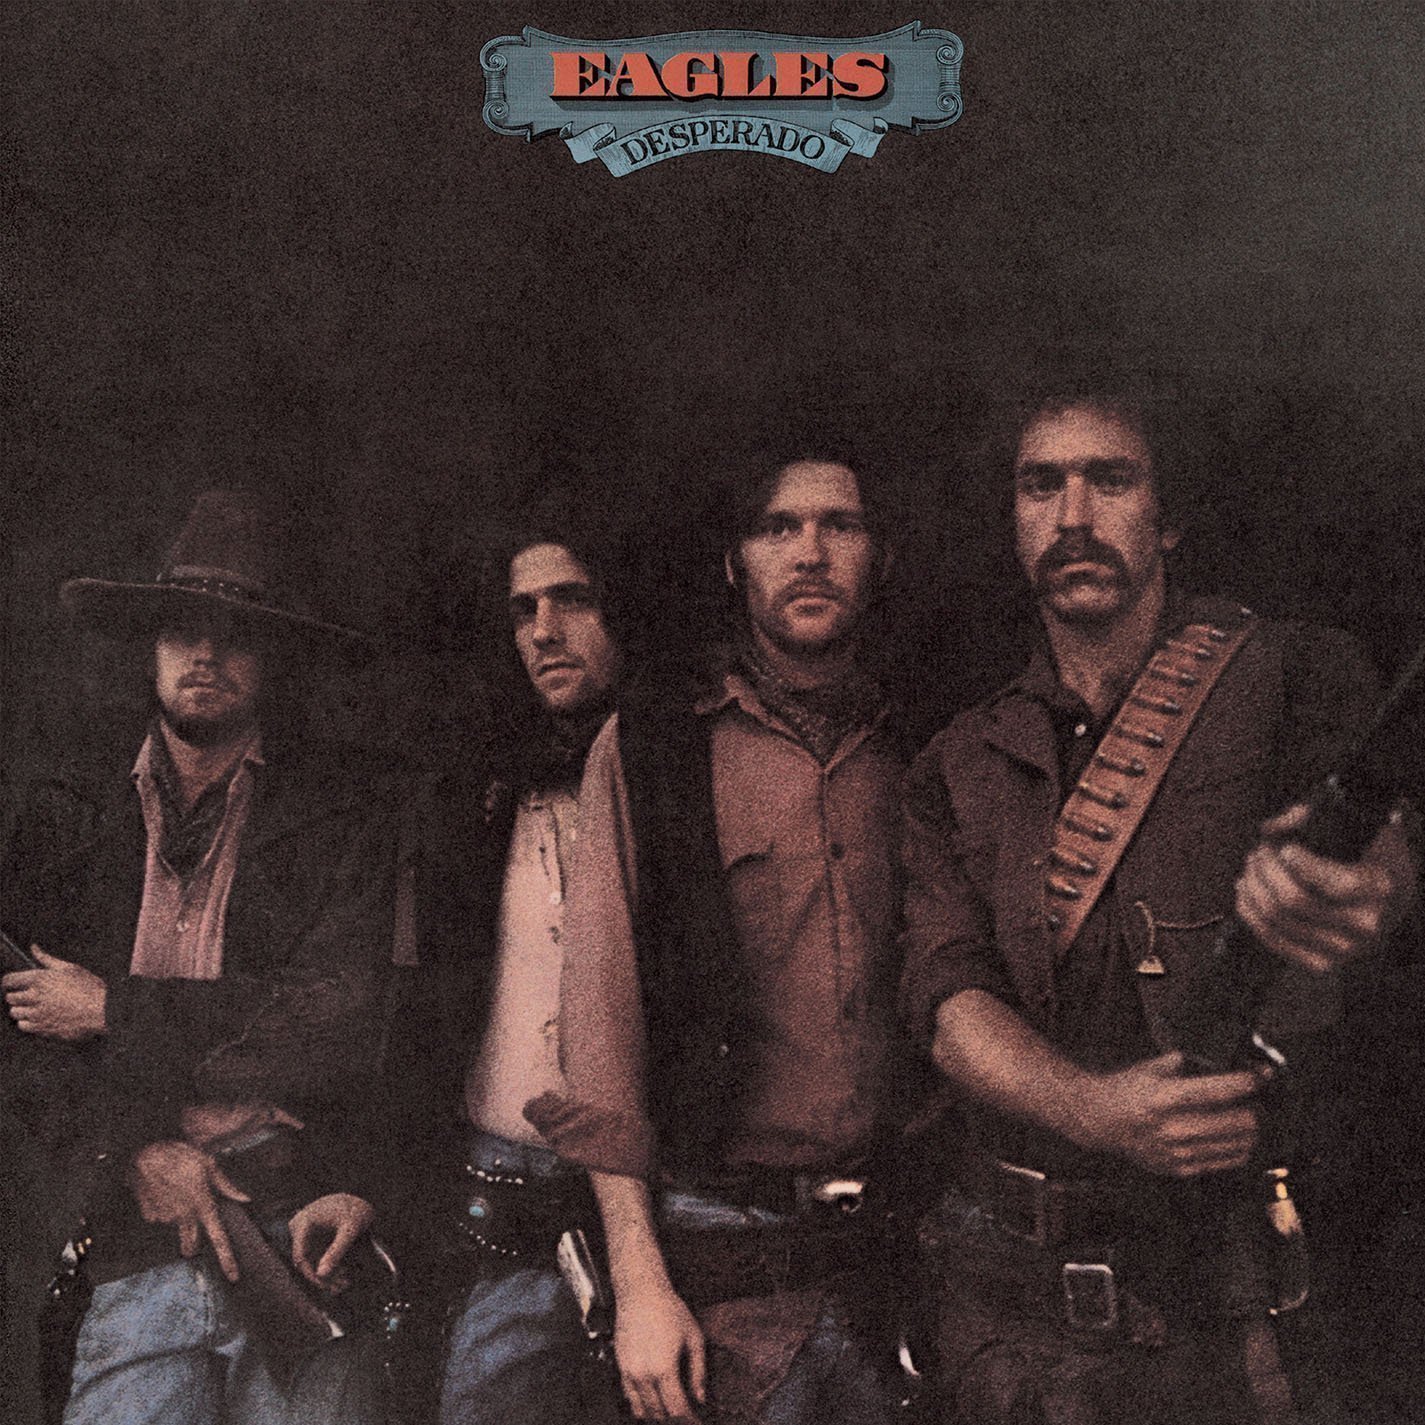 Vinyl Record Eagles - Desperado (LP)